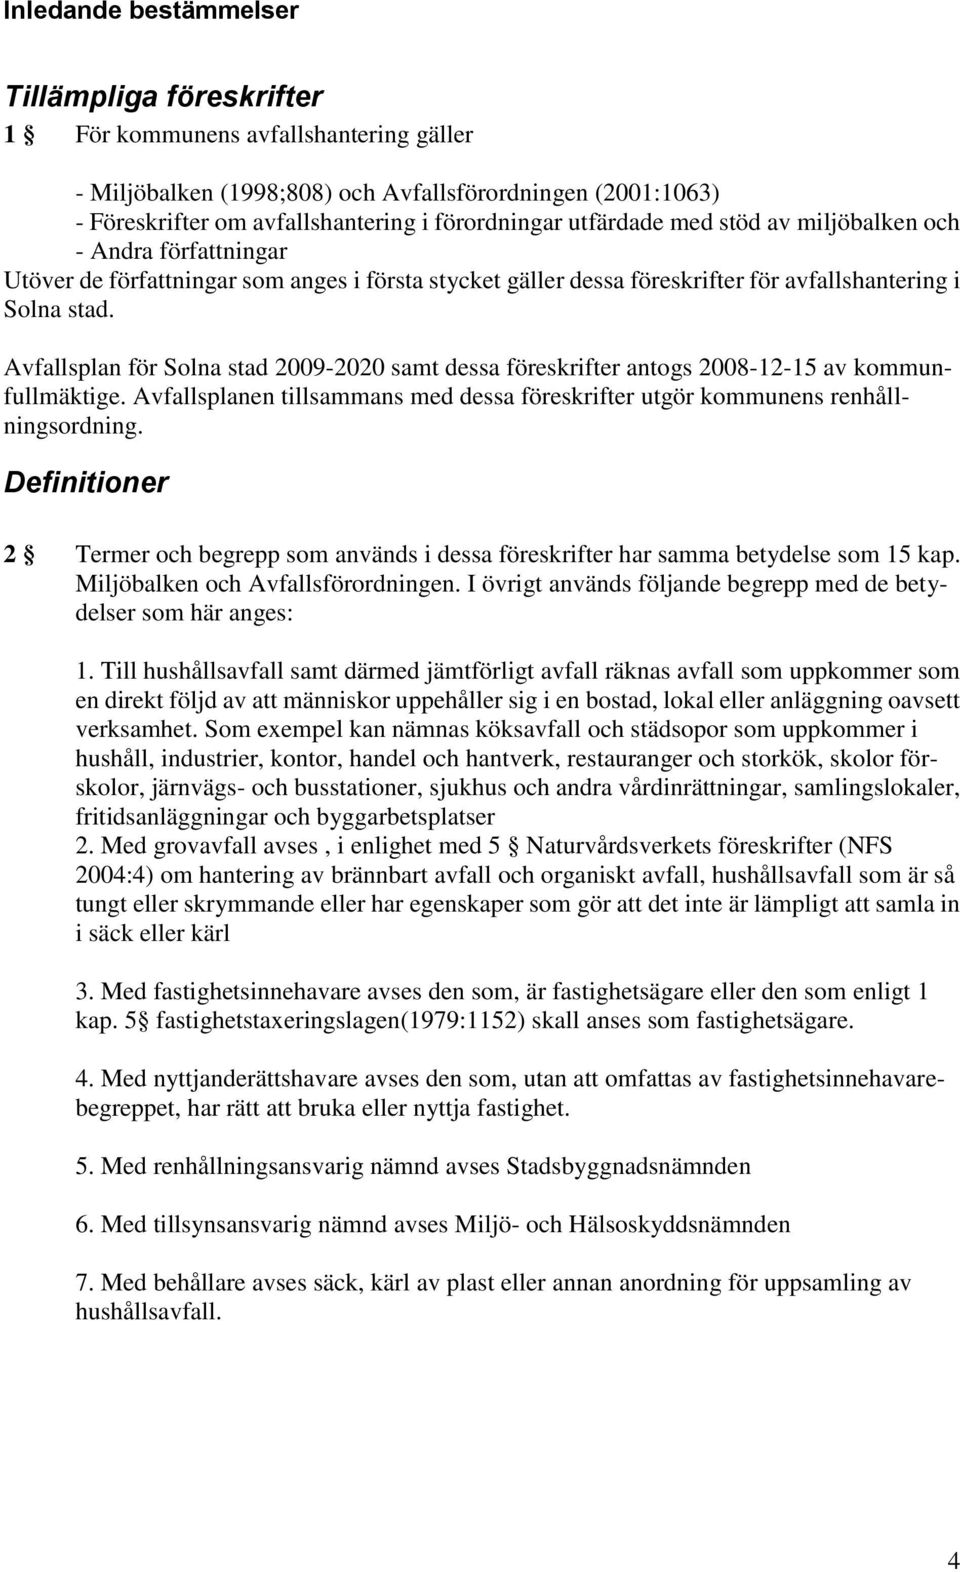 Avfallsplan för Solna stad 2009-2020 samt dessa föreskrifter antogs 2008-12-15 av kommunfullmäktige. Avfallsplanen tillsammans med dessa föreskrifter utgör kommunens renhållningsordning.